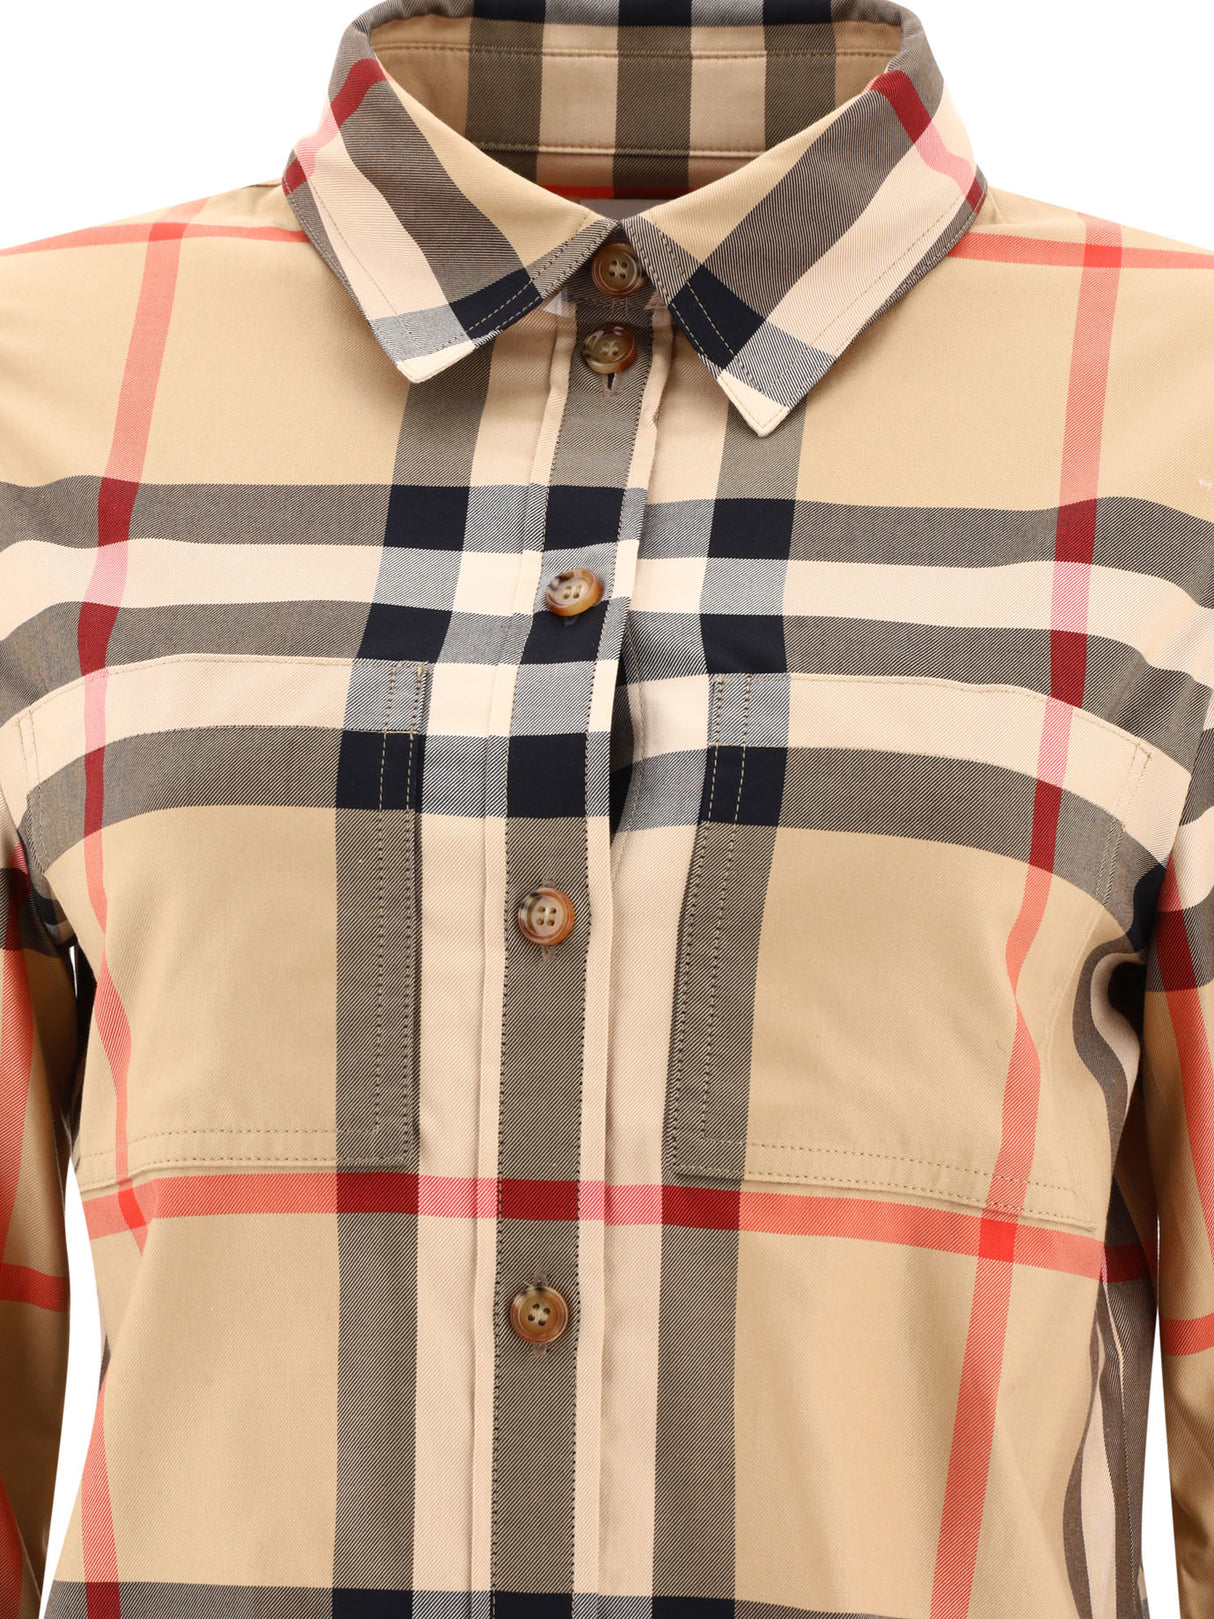 ベージュチェックシャツ（女性用）- スリムフィット、ポイントカラー、ボタンクロージング